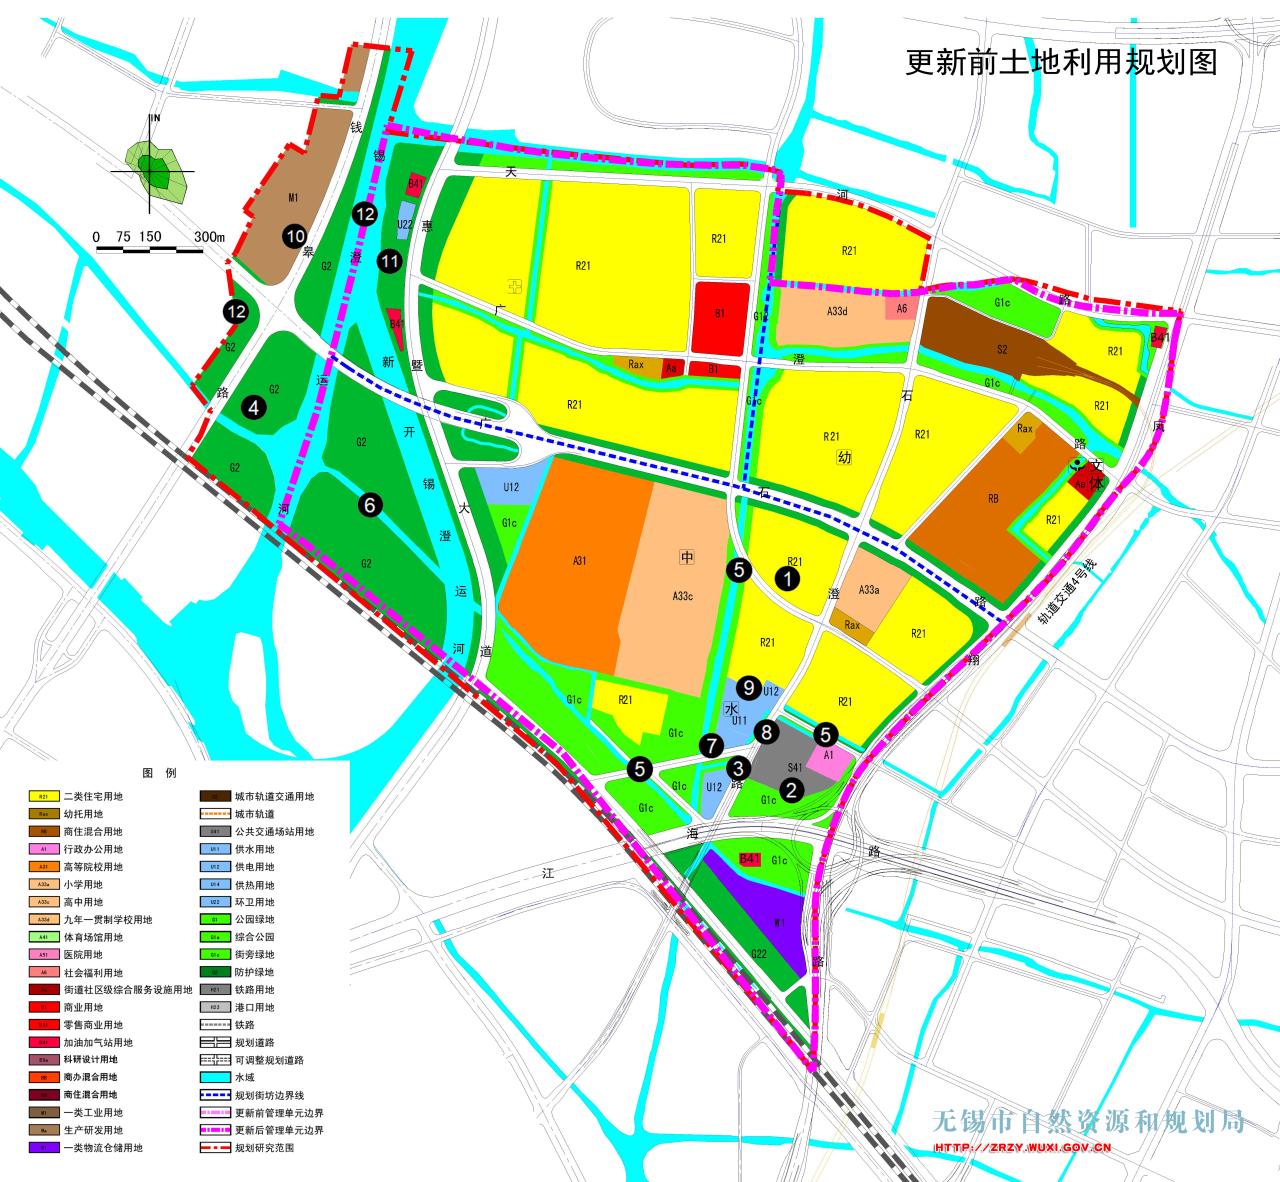 无锡市中心城区控制性详细规划黄巷-广石管理单元动态更新批前公示